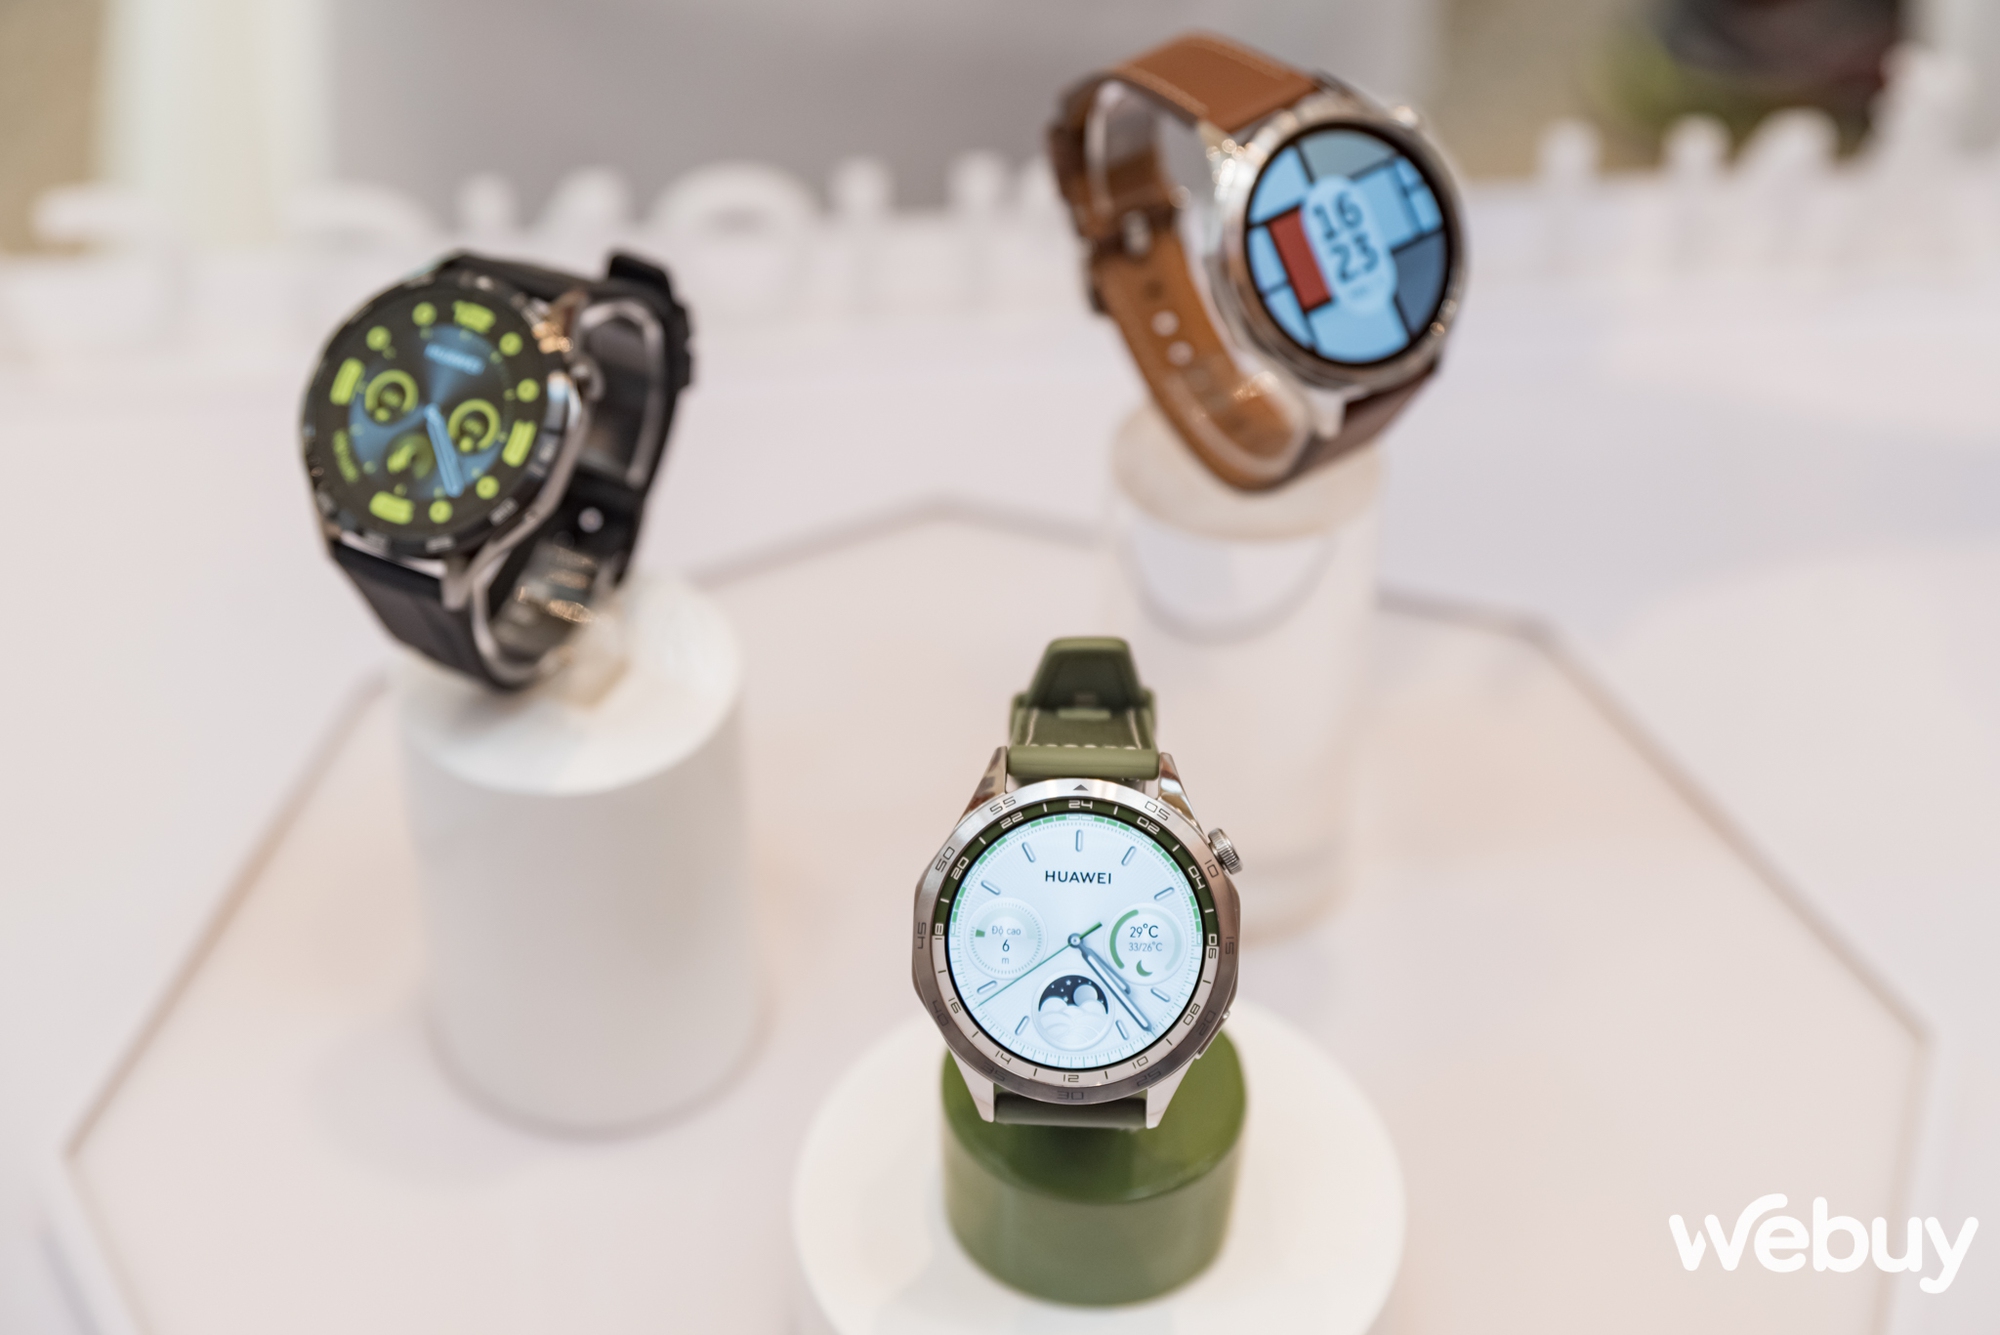 Huawei ra mắt Watch GT 4: Thiết kế đa phong cách, nhiều cải tiến sức khoẻ lẫn thể thao, giá từ 6 triệu đồng - Ảnh 1.